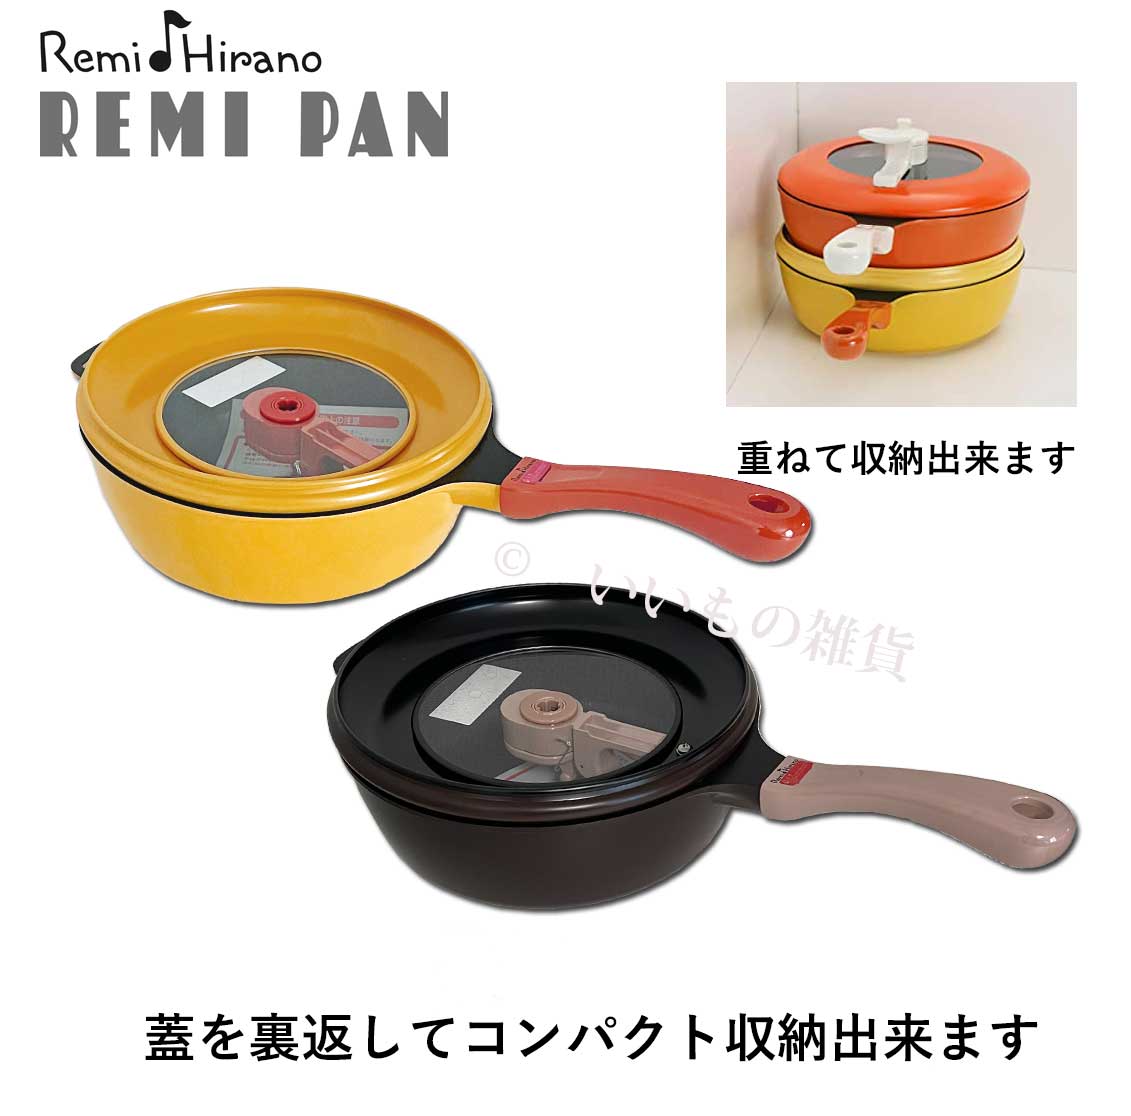 平野レミ レミパン イエロー 24ｃｍ RHF-200 レギュラーサイズ IH調理